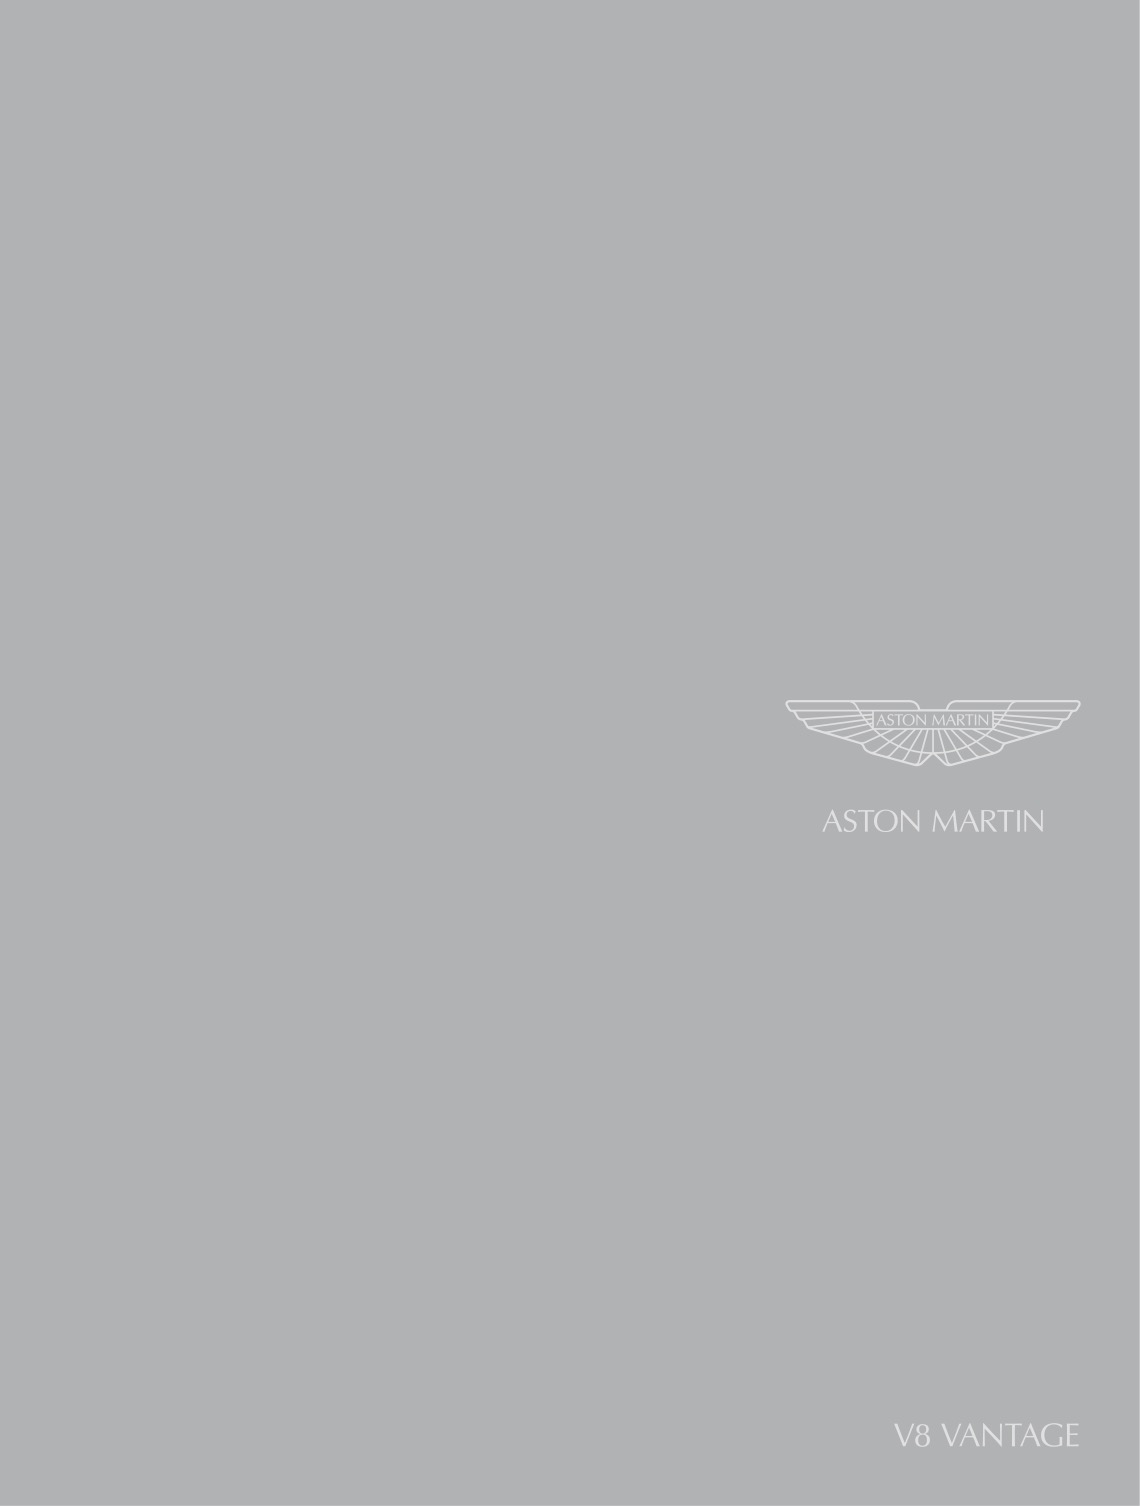 Aston Martin Vantage V8 Brochure